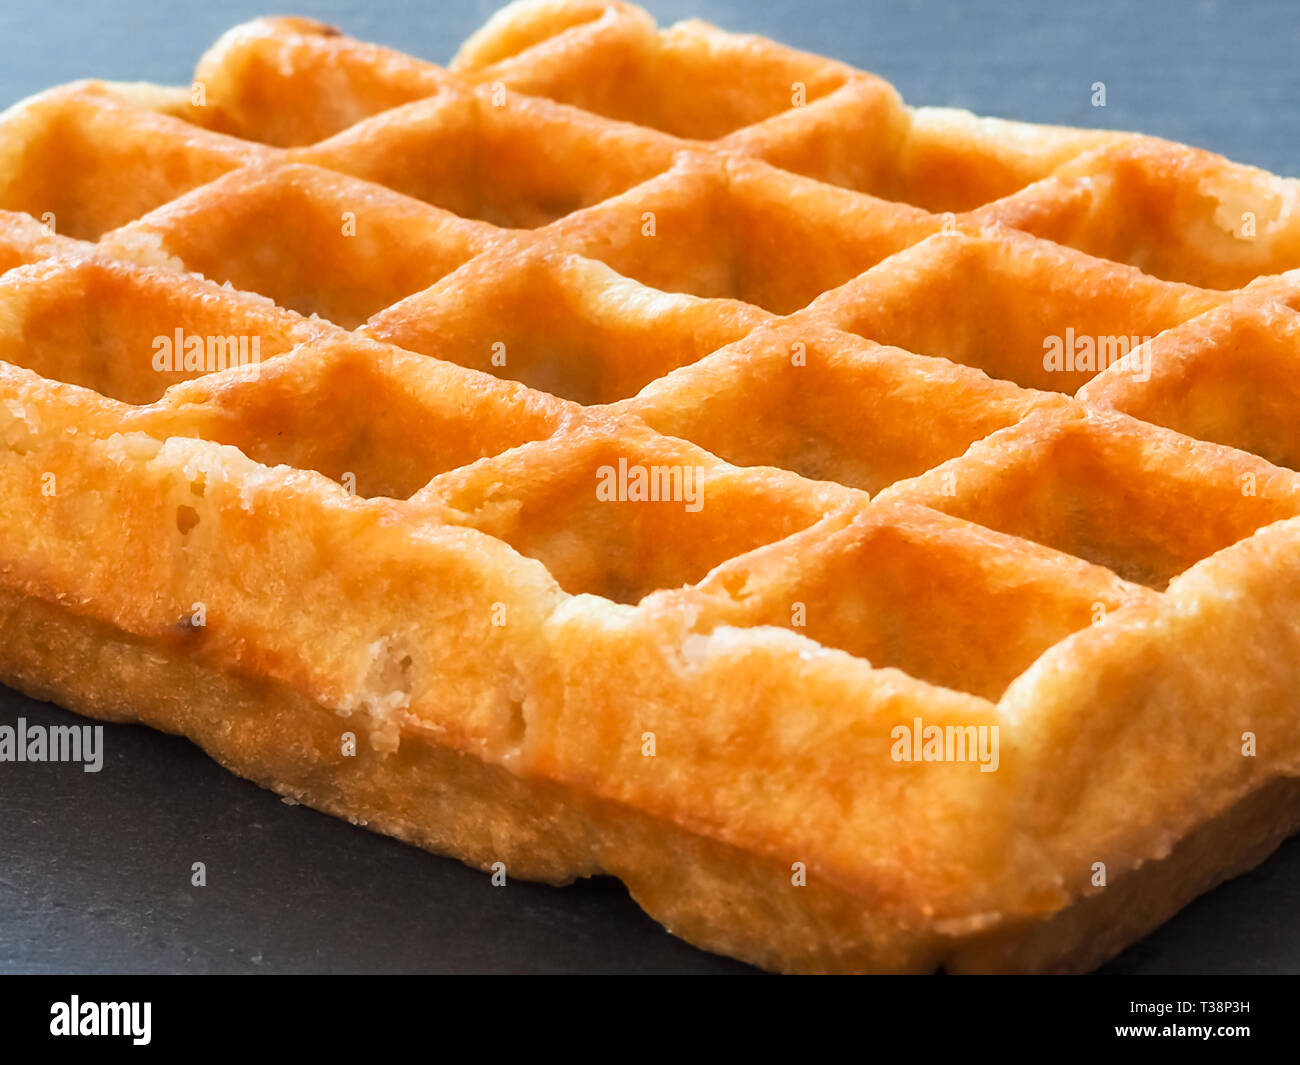 A Belgian waffle on a slate plate Stock Photo